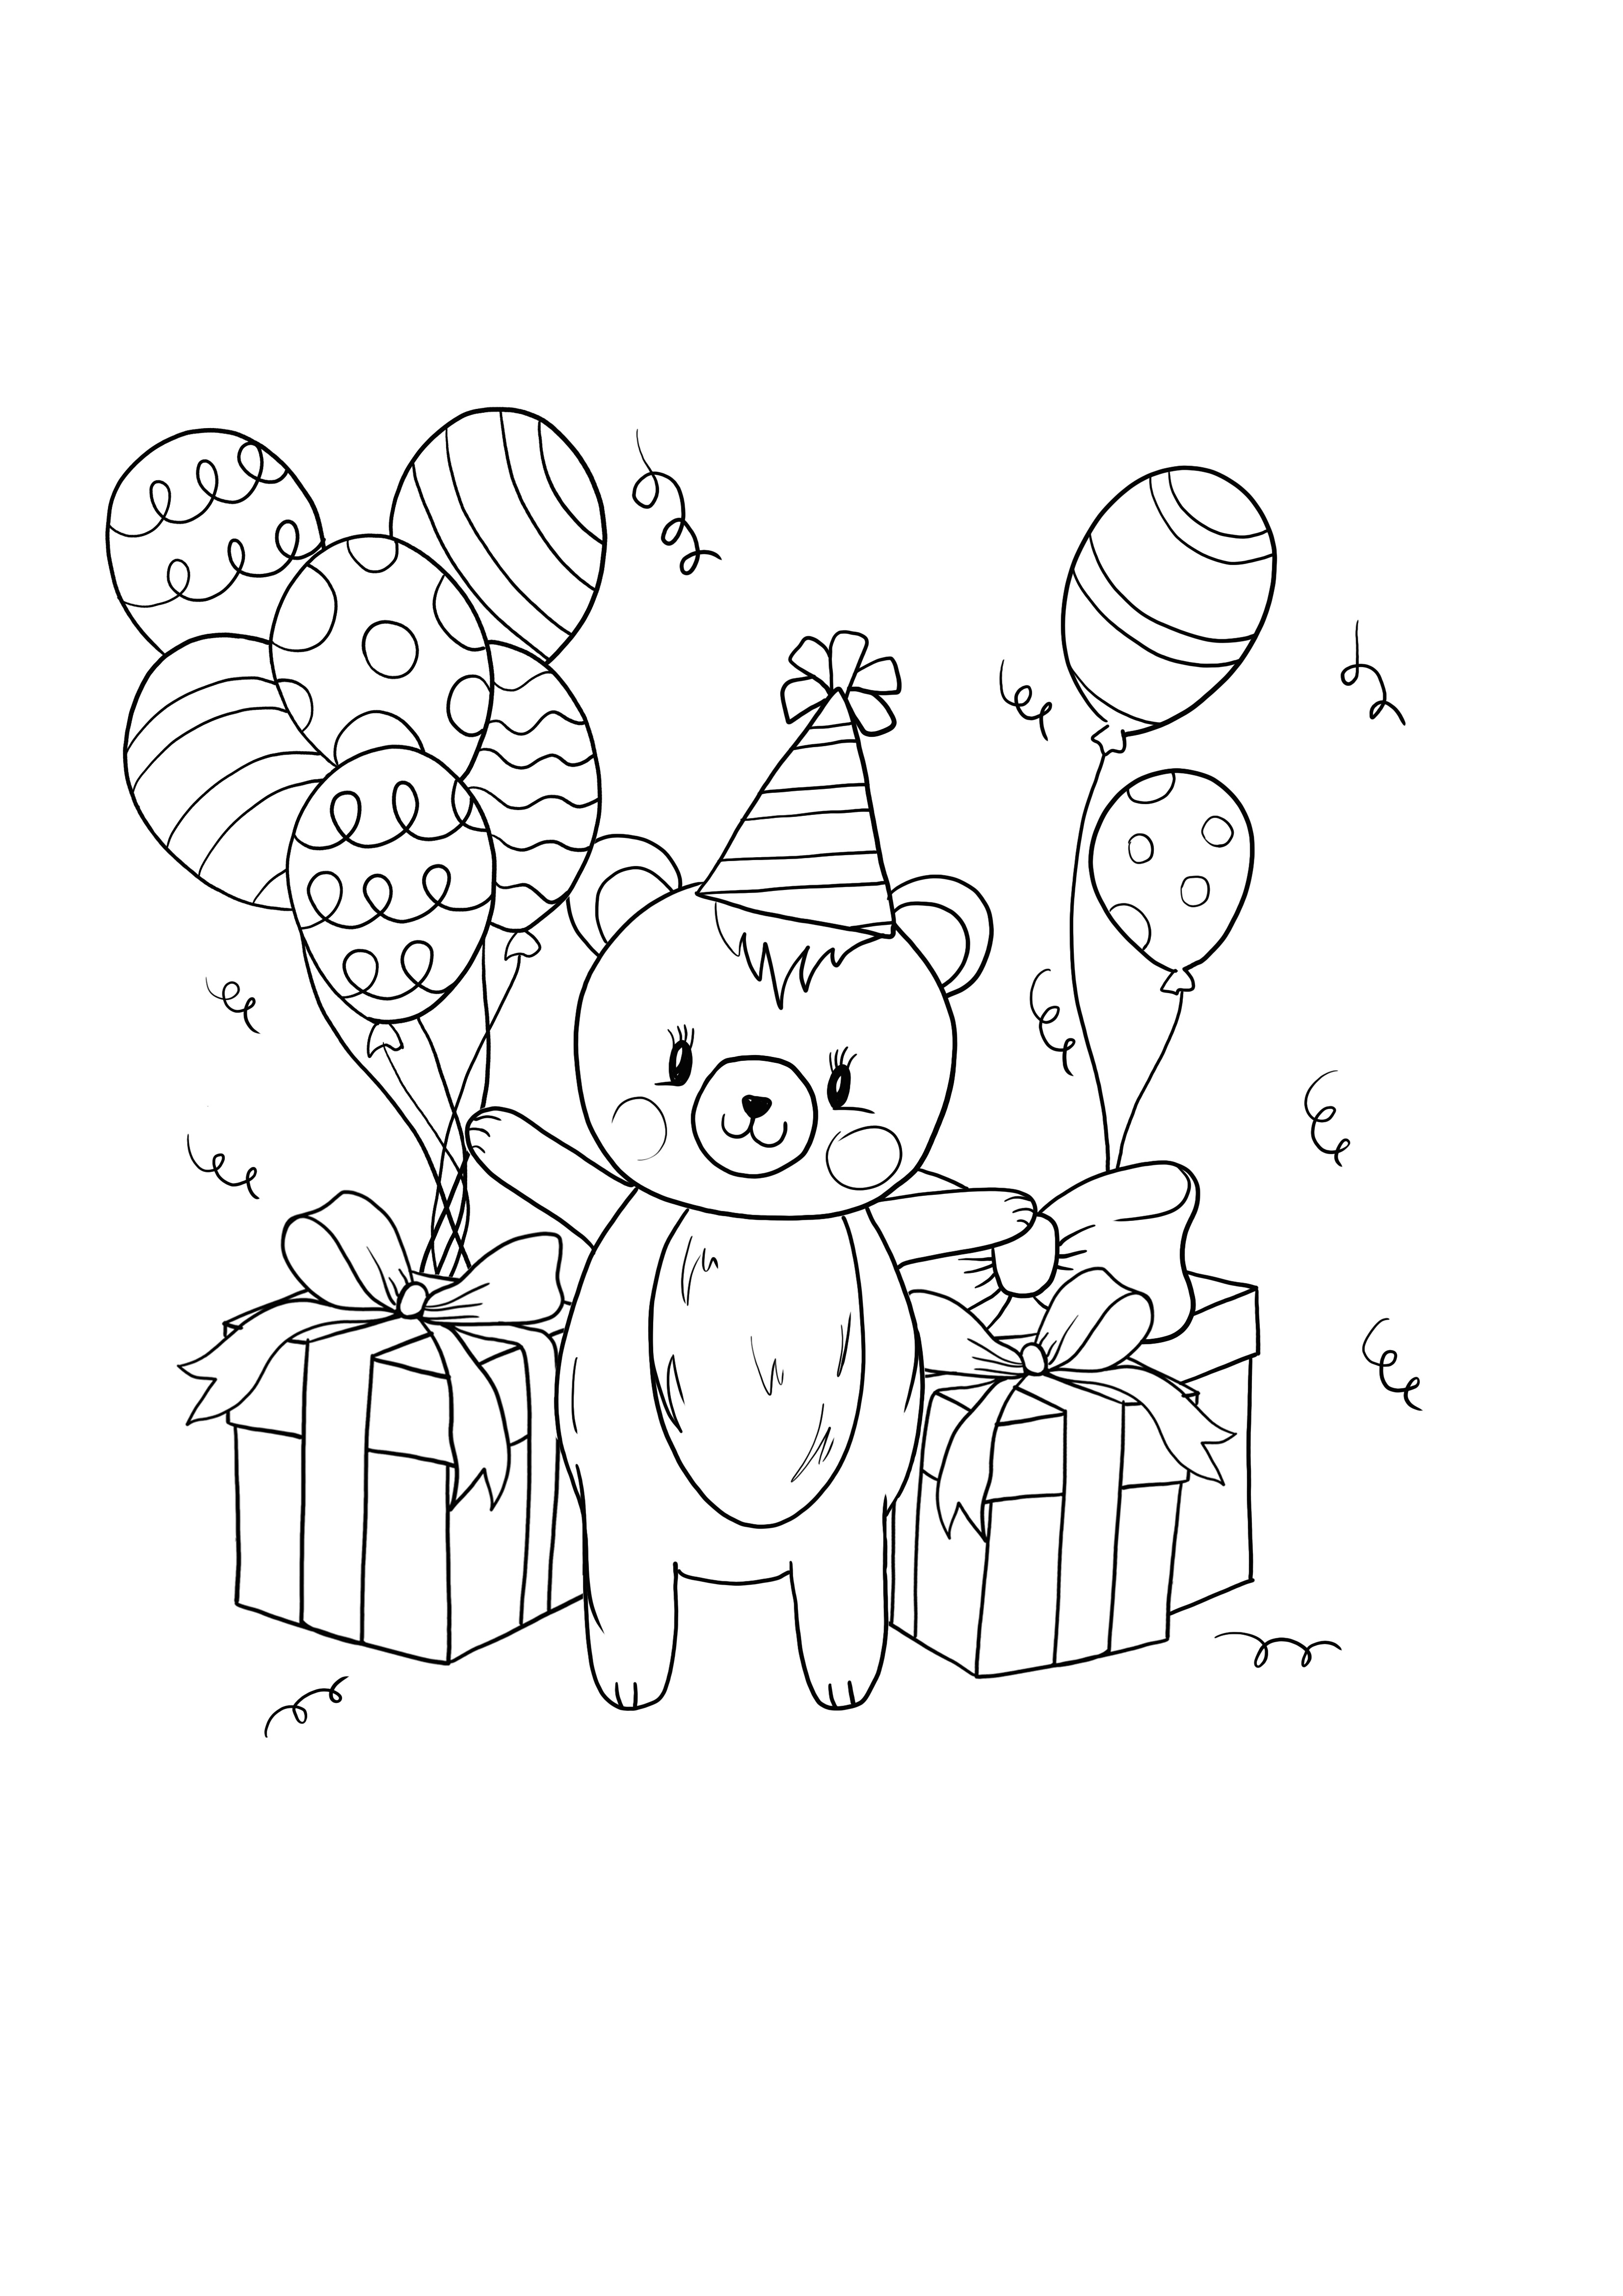 Hadiah teddy ulang tahun dan pencetakan dan pewarnaan balon gratis